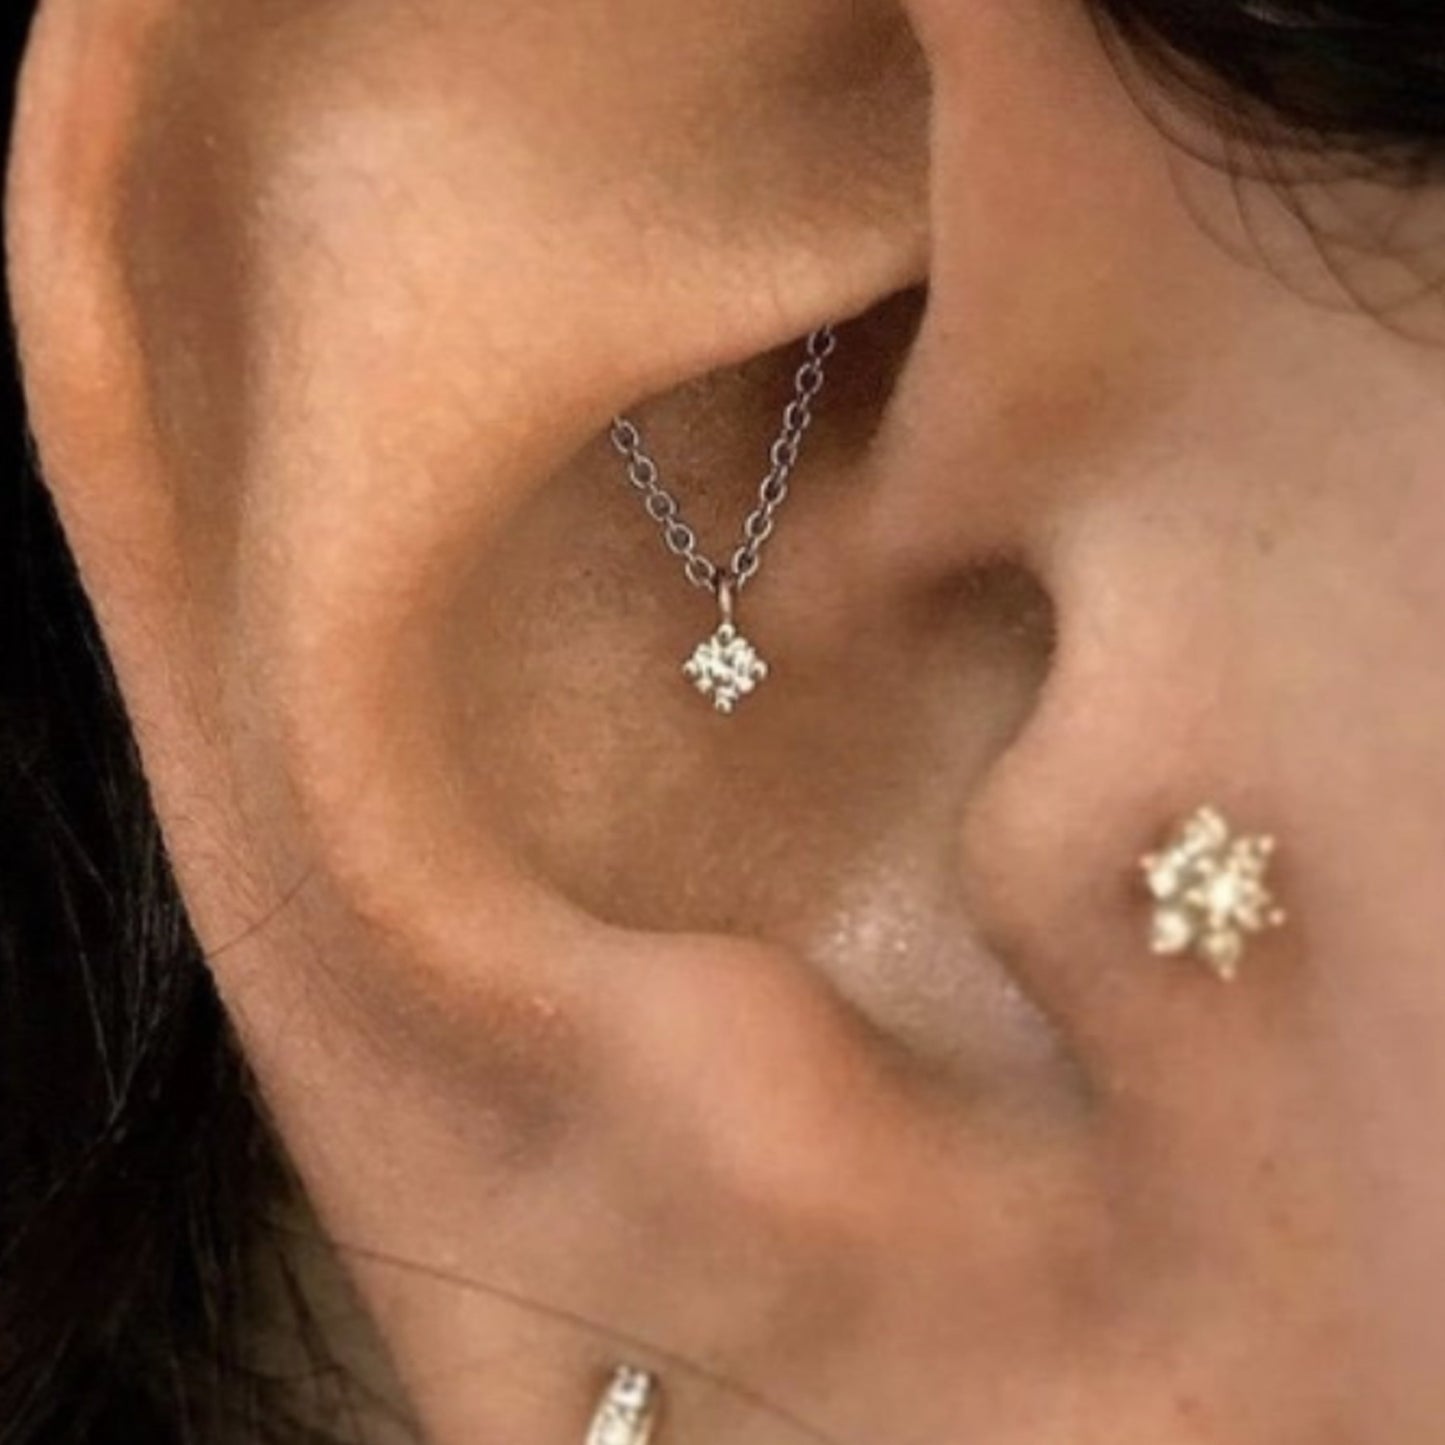 Diamond Chain Earrings, Industrial Piercing Earrings